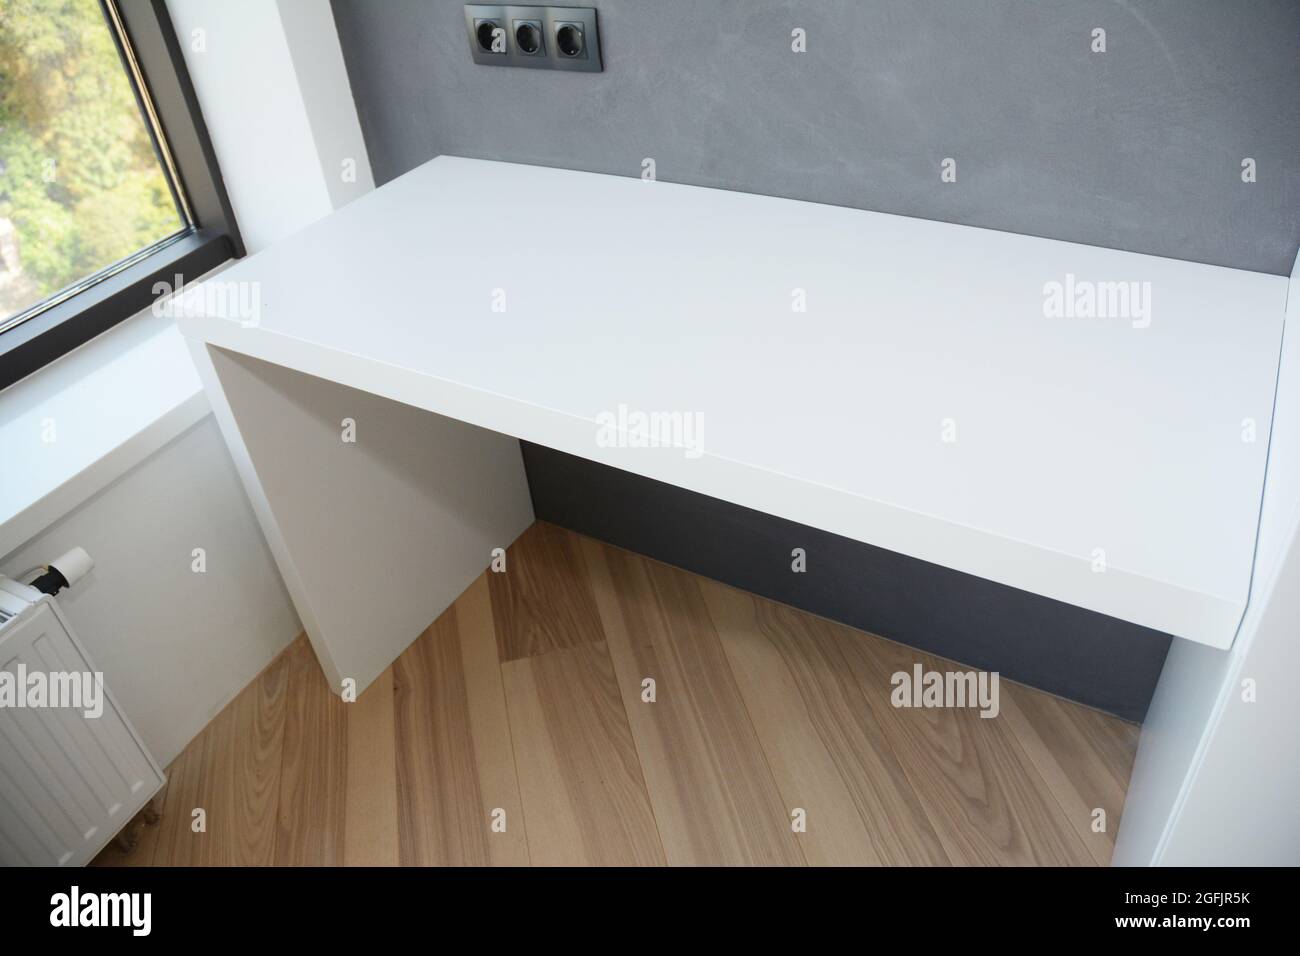 Ein Computertisch mit weißem Glanz auf dem Holzlaminatboden in der Nähe des  Fensters mit Heizkörper und lackierter grauer Wand mit schwarzen  europäischen Wandmontierern Stockfotografie - Alamy